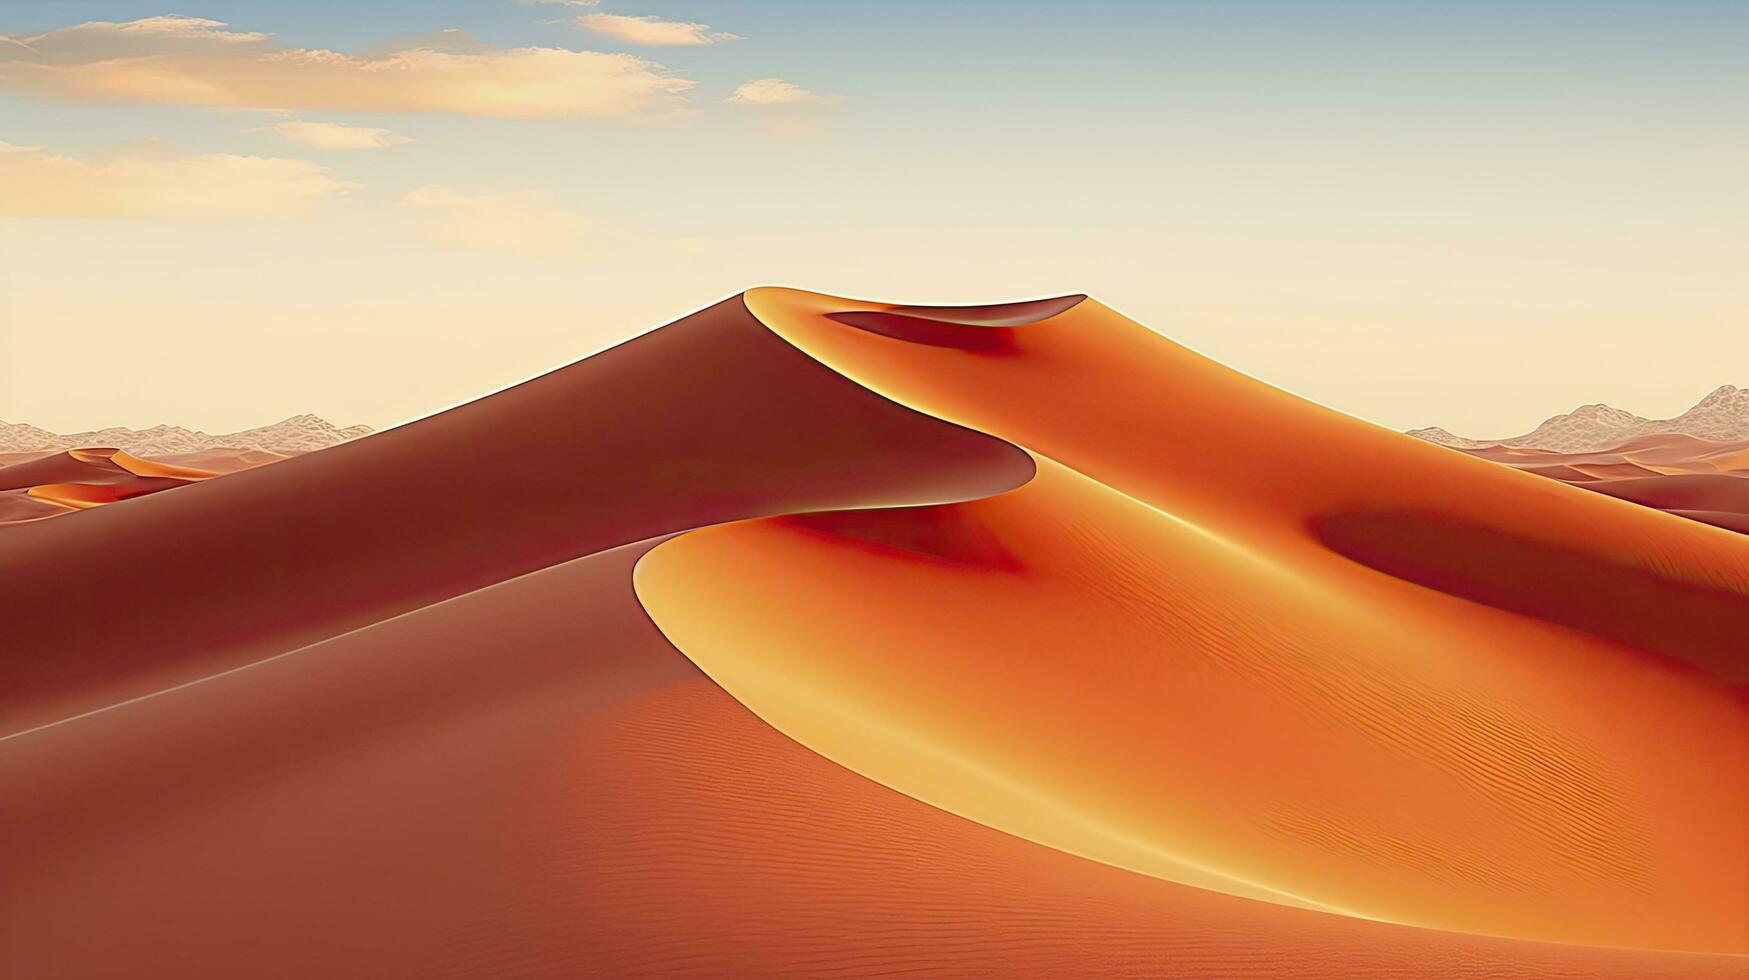 ai gerado deserto com mágico areias e dunas Como inspiração para exótico aventuras dentro seco climas. ai gerado. foto